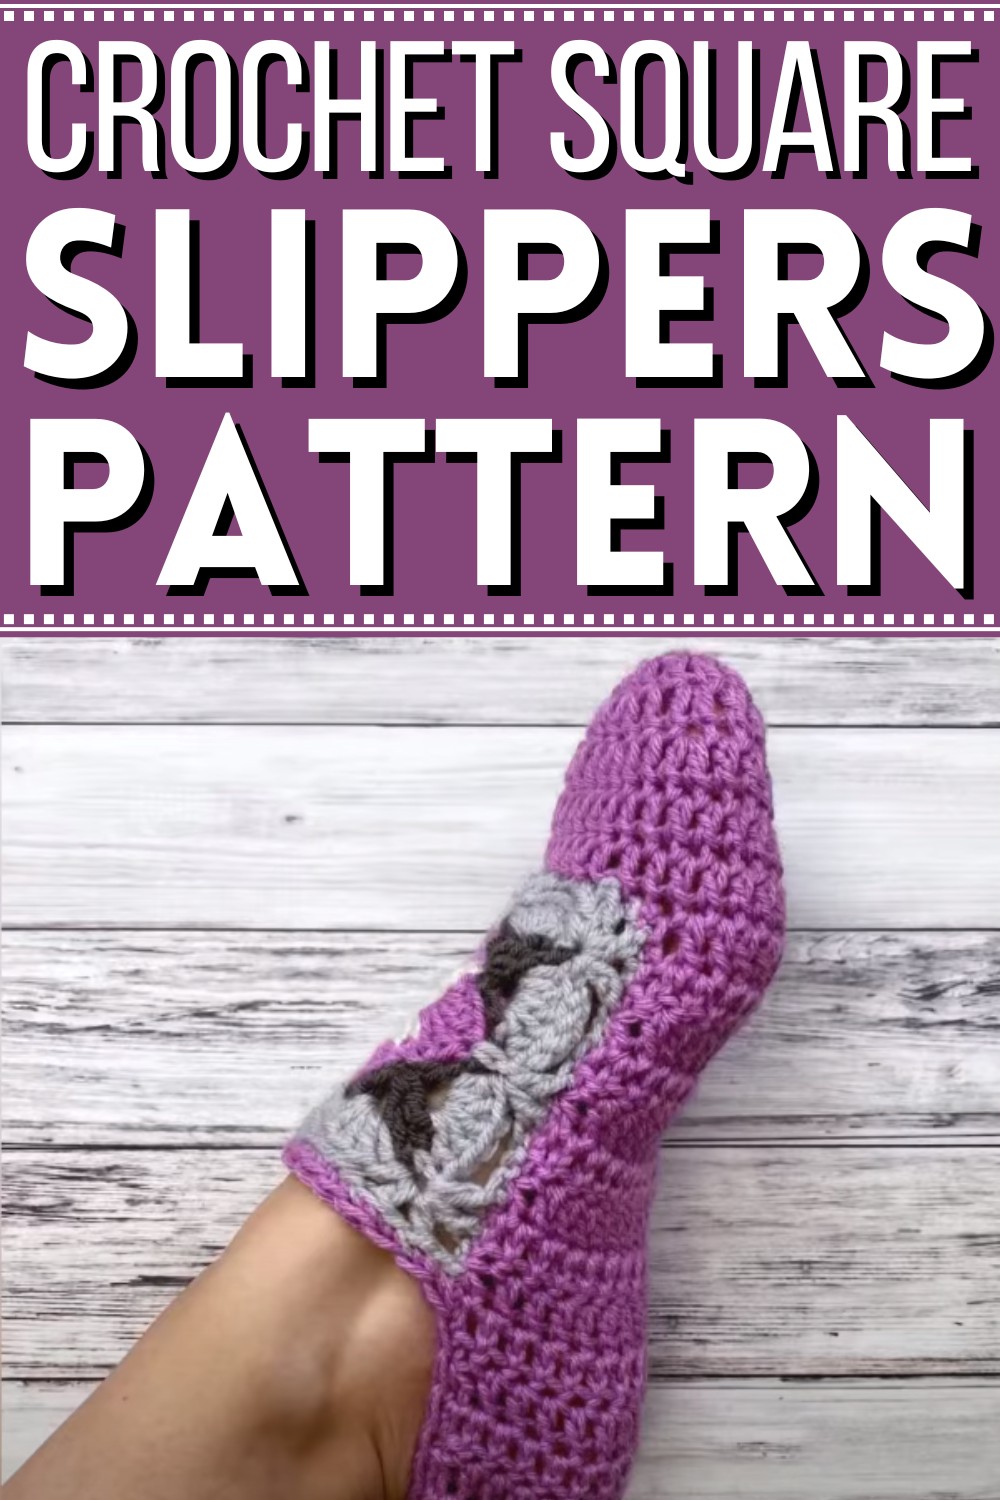 Crochet Square Slippers